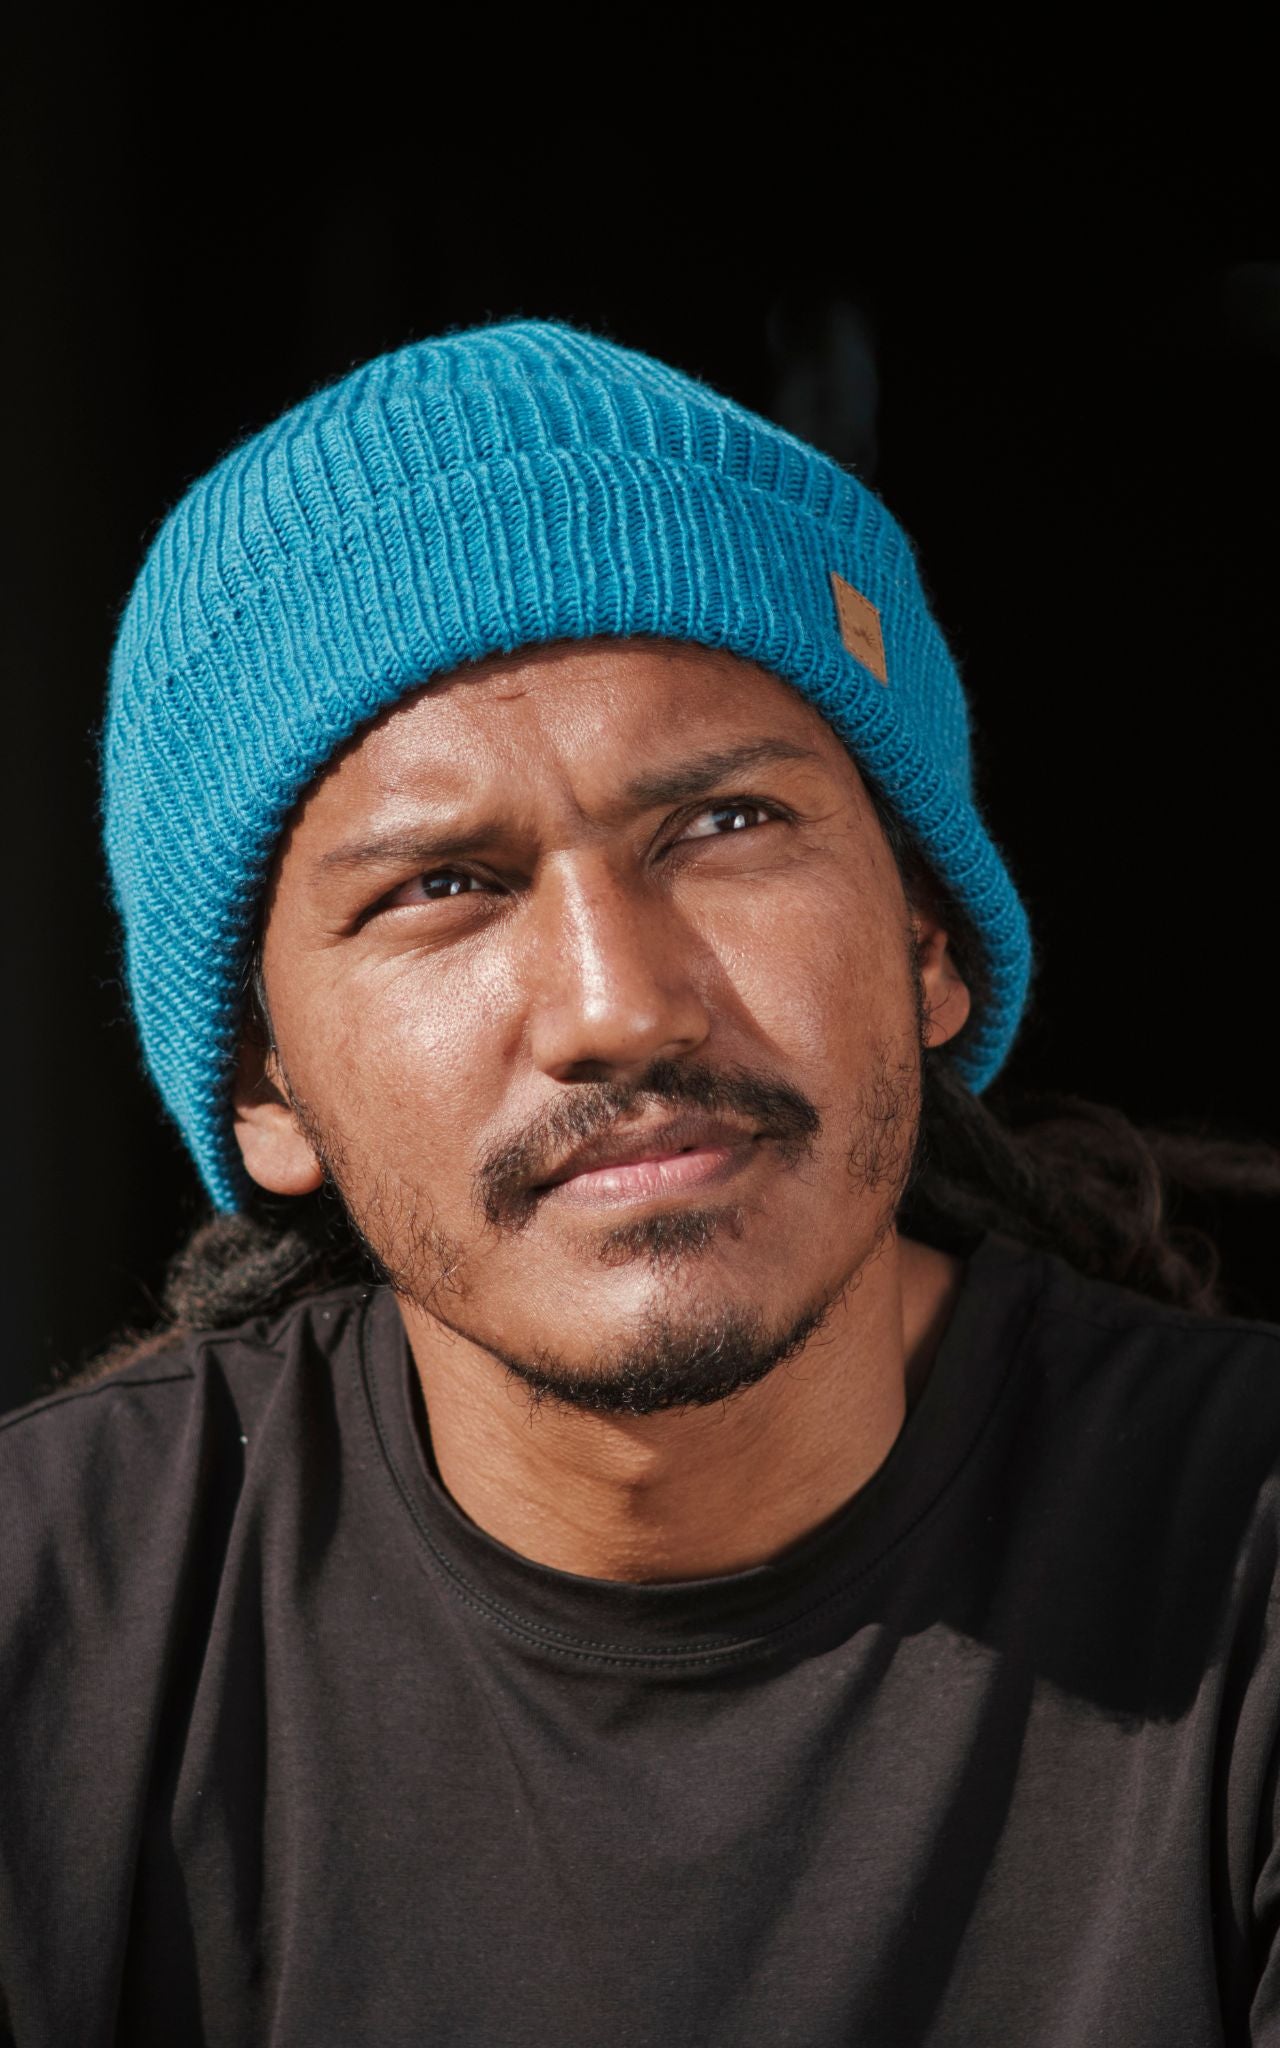 Surya Australia Merino Wool 'Fisherman' Beanie for men made in Nepal - blue